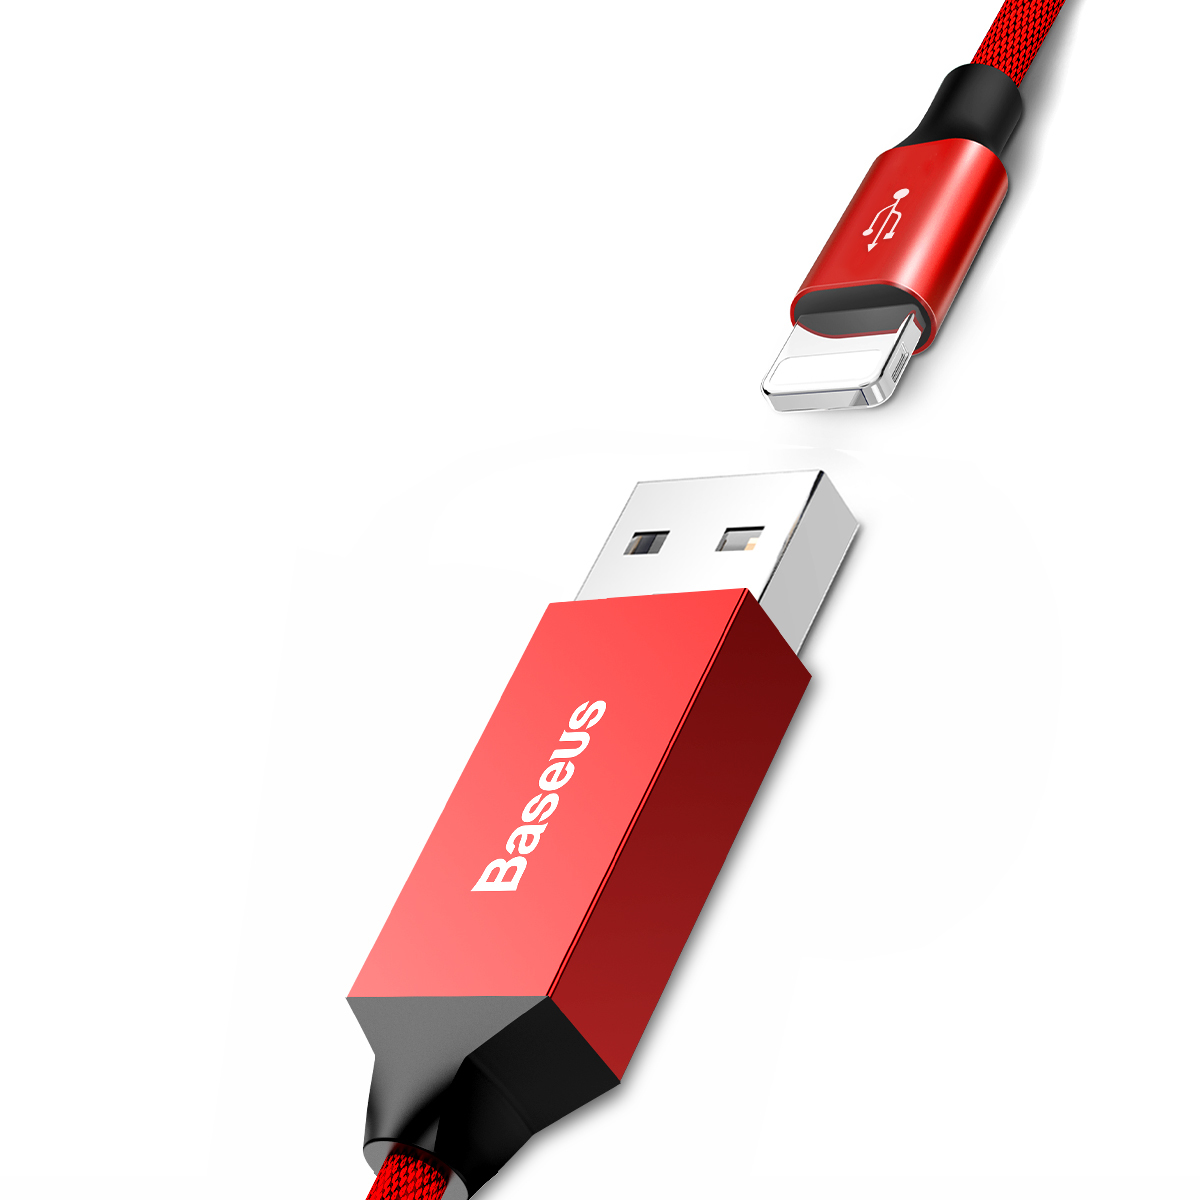 Cáp sạc nhanh, siêu dài Baseus Artistic Striped Lightning cho iPhone/ iPad ( 5 met, 2.4A,Fast Charging Cable) - Hàng chính hãng